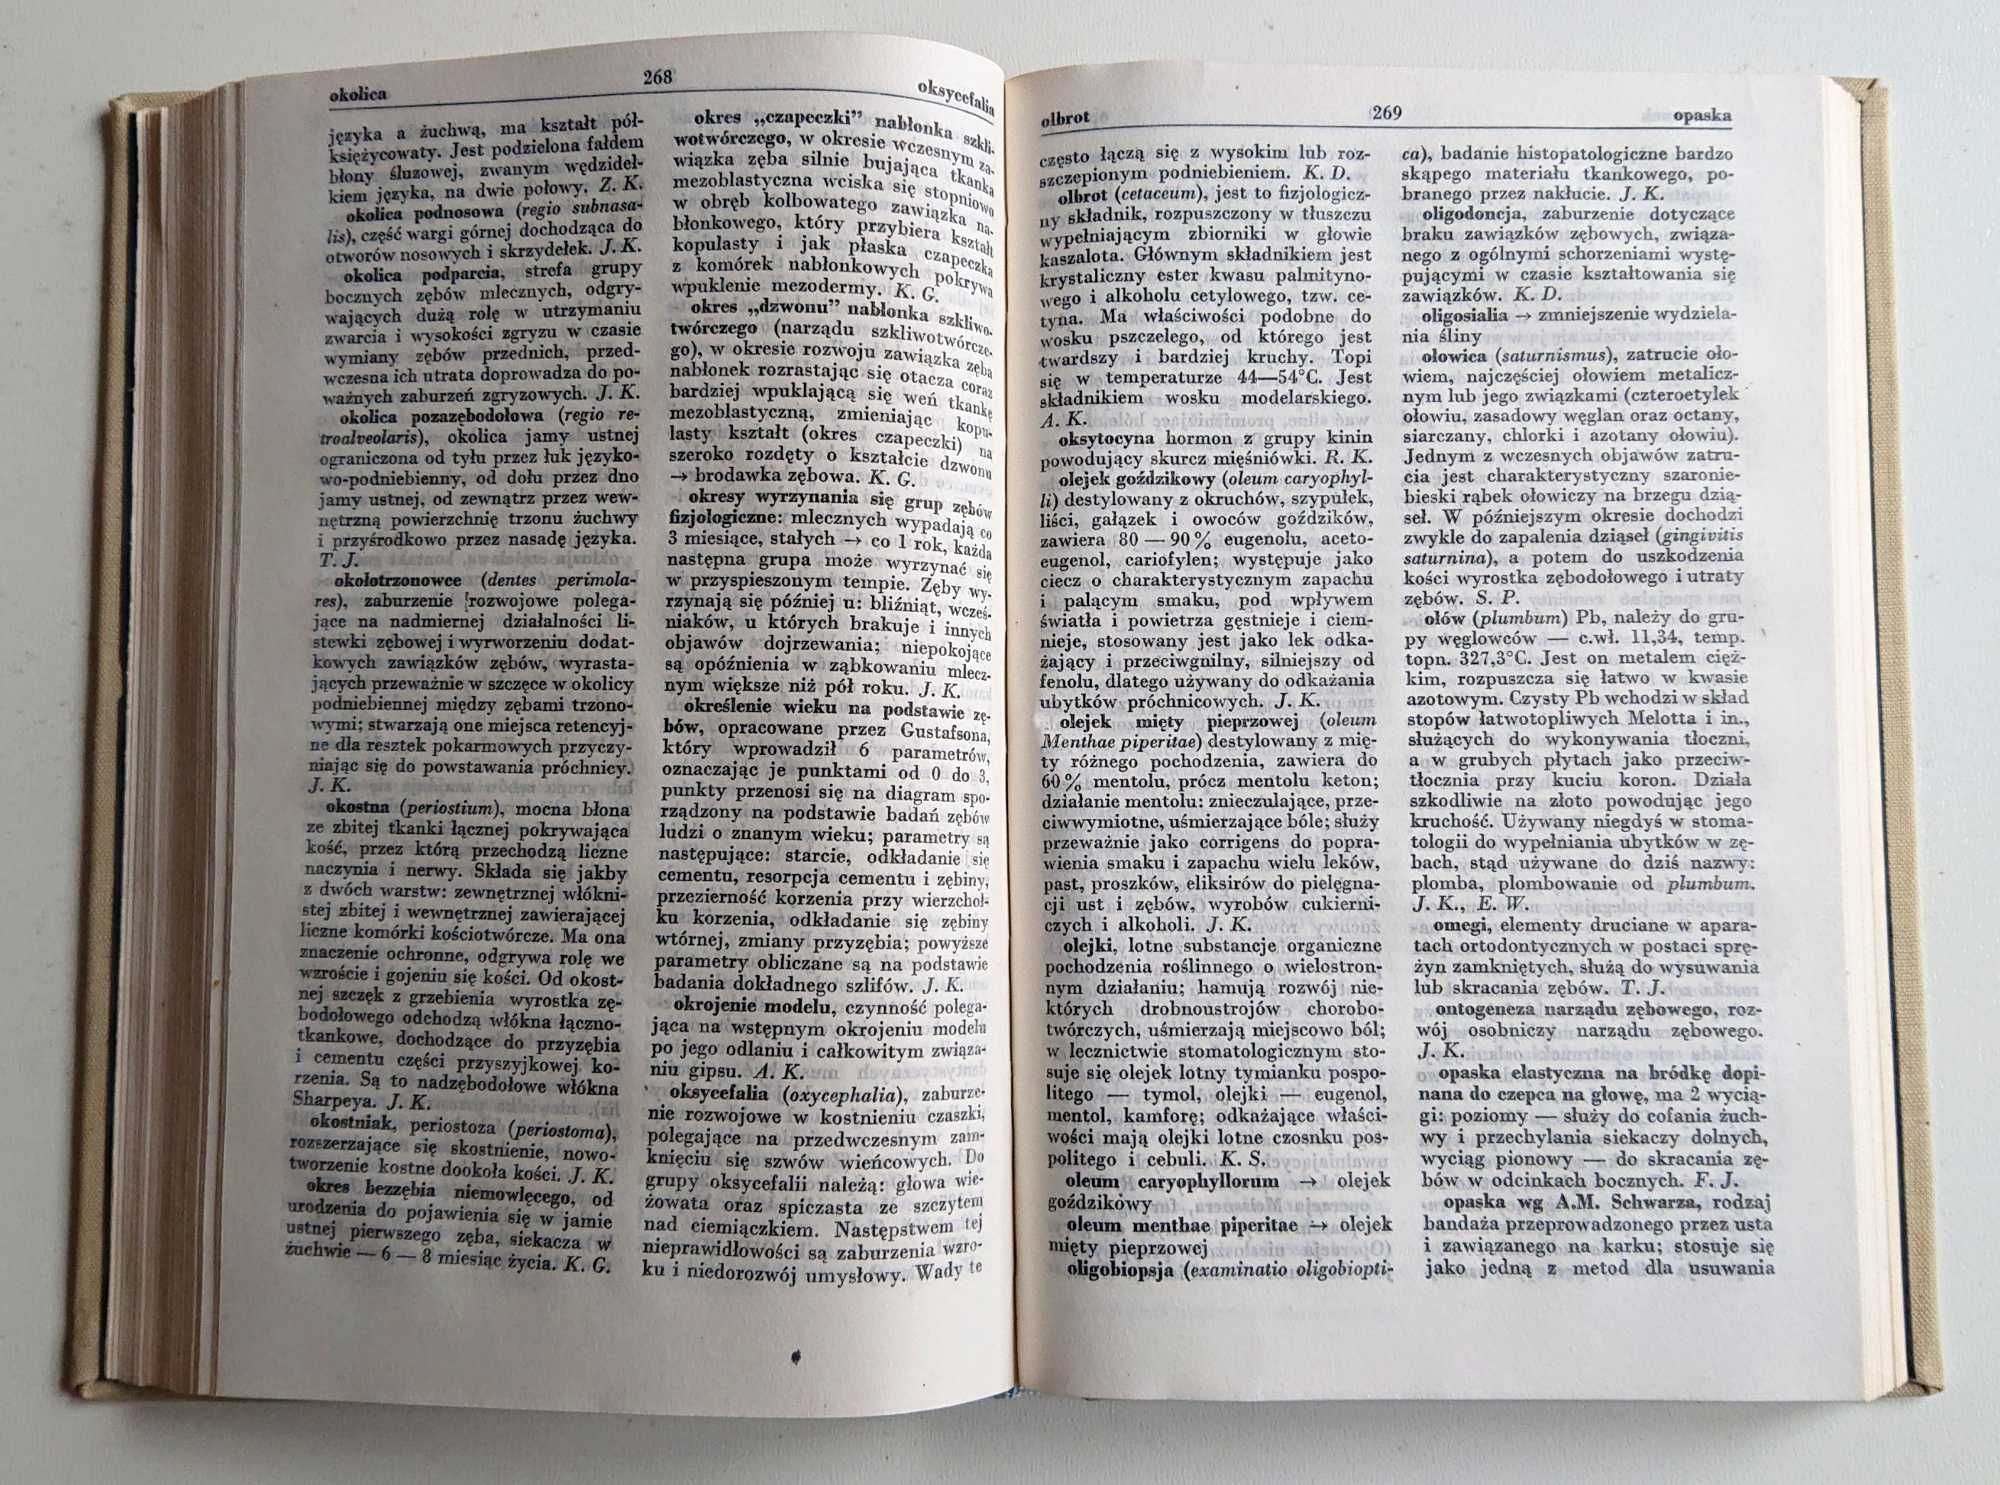 "Słownik terminologii stomatologicznej" - 1981 - Janusz Krzywicki